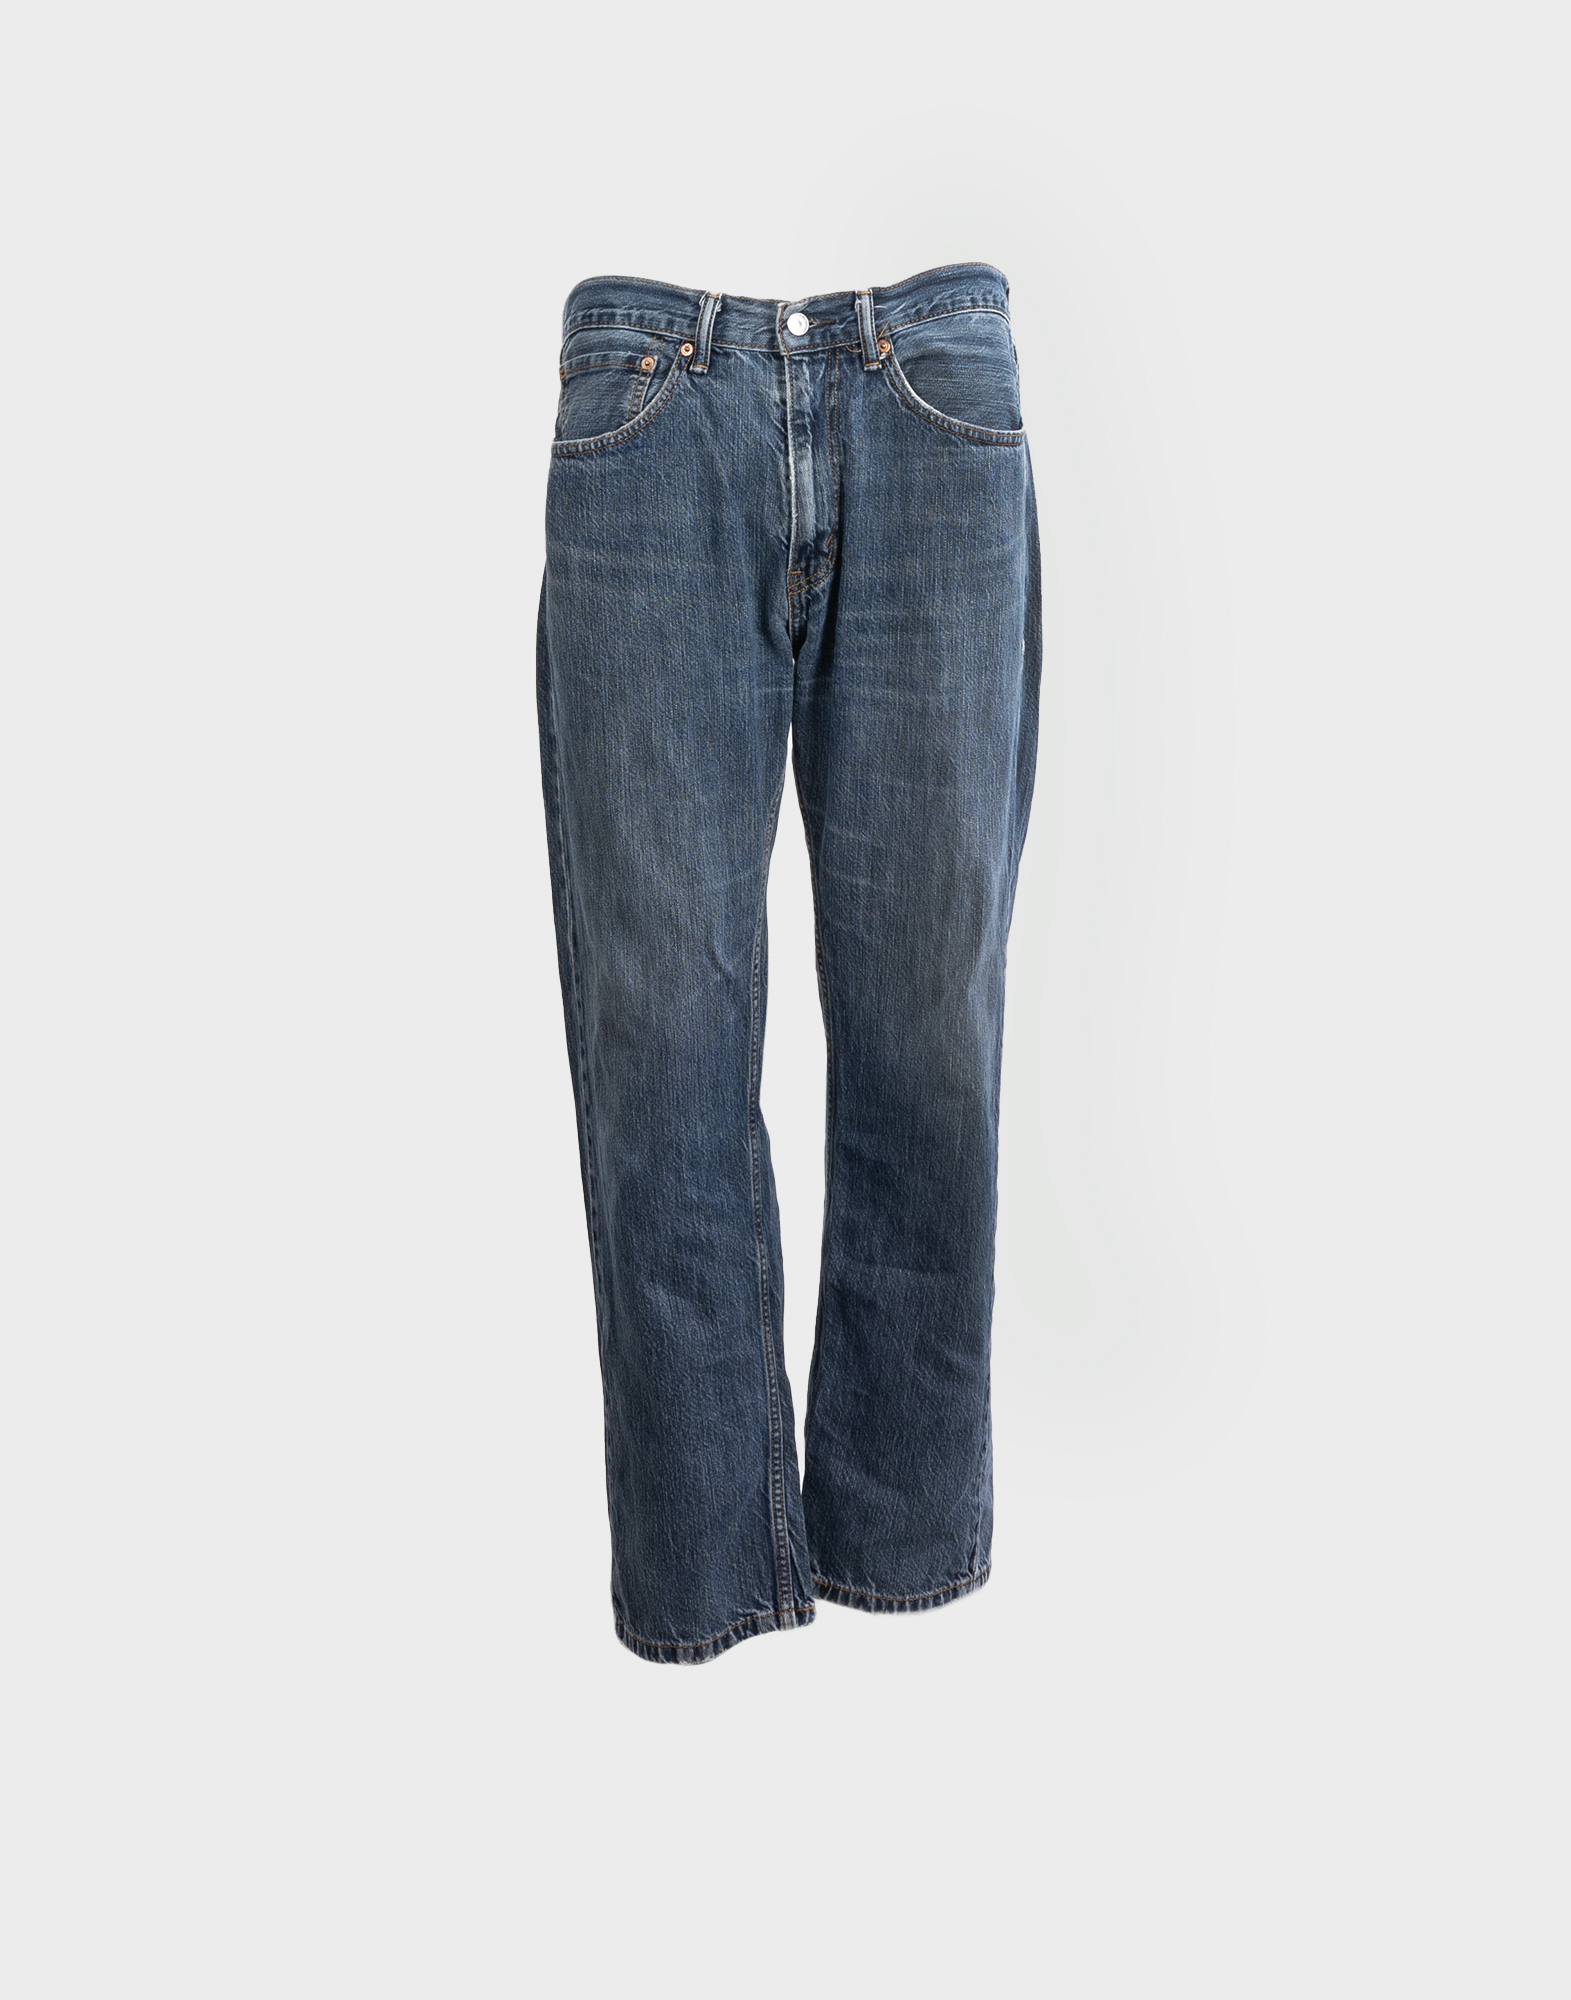 gray men's levis 505 jeans pants